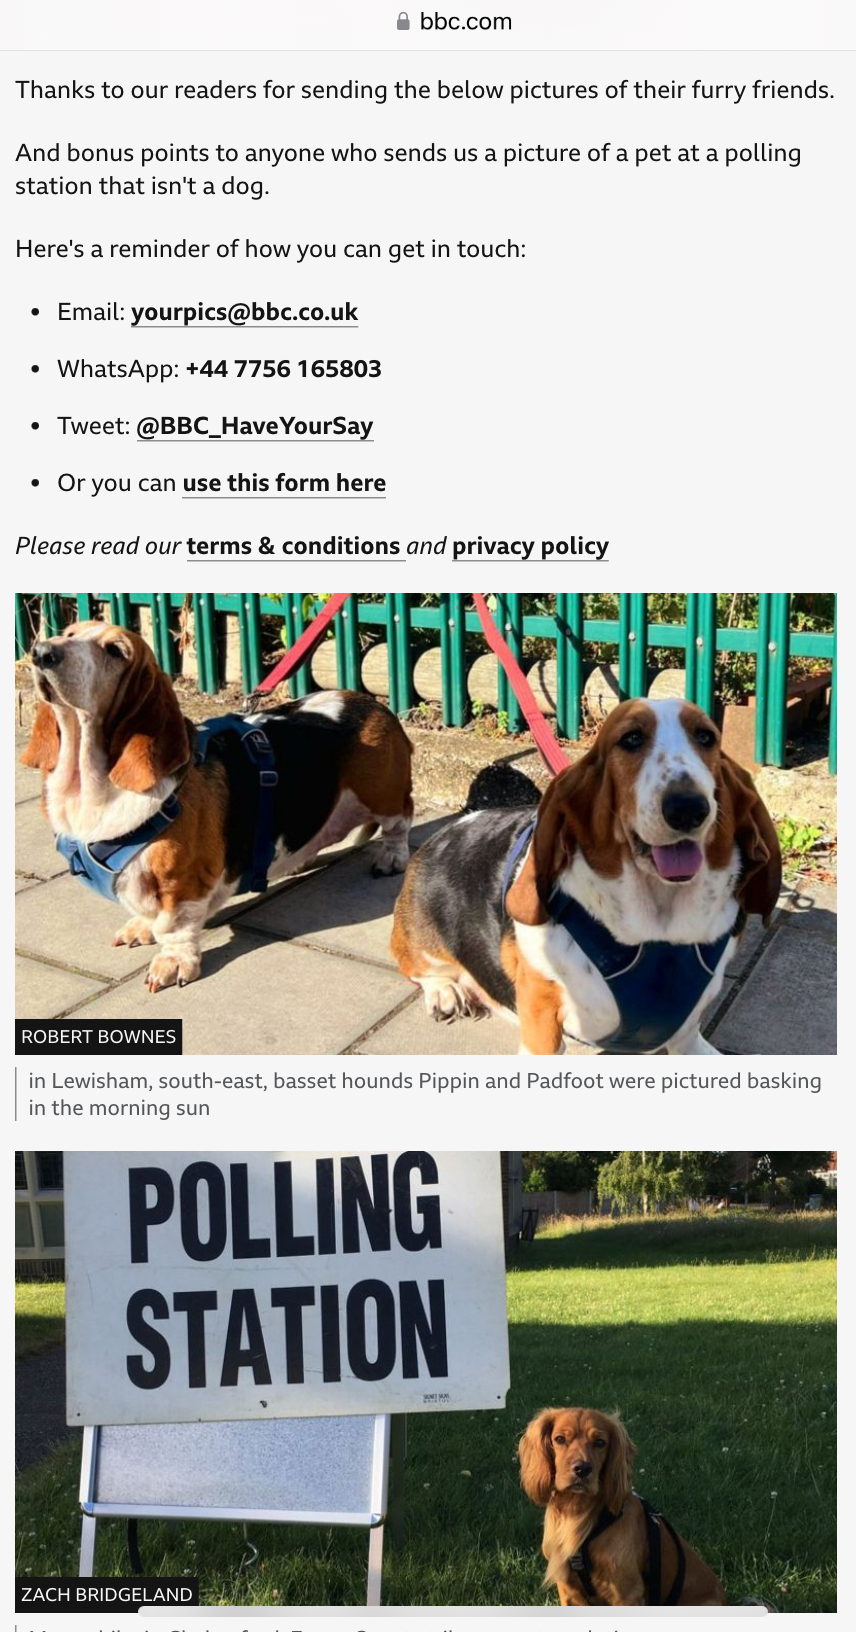 BBC即时报道提及票站外的狗狗。